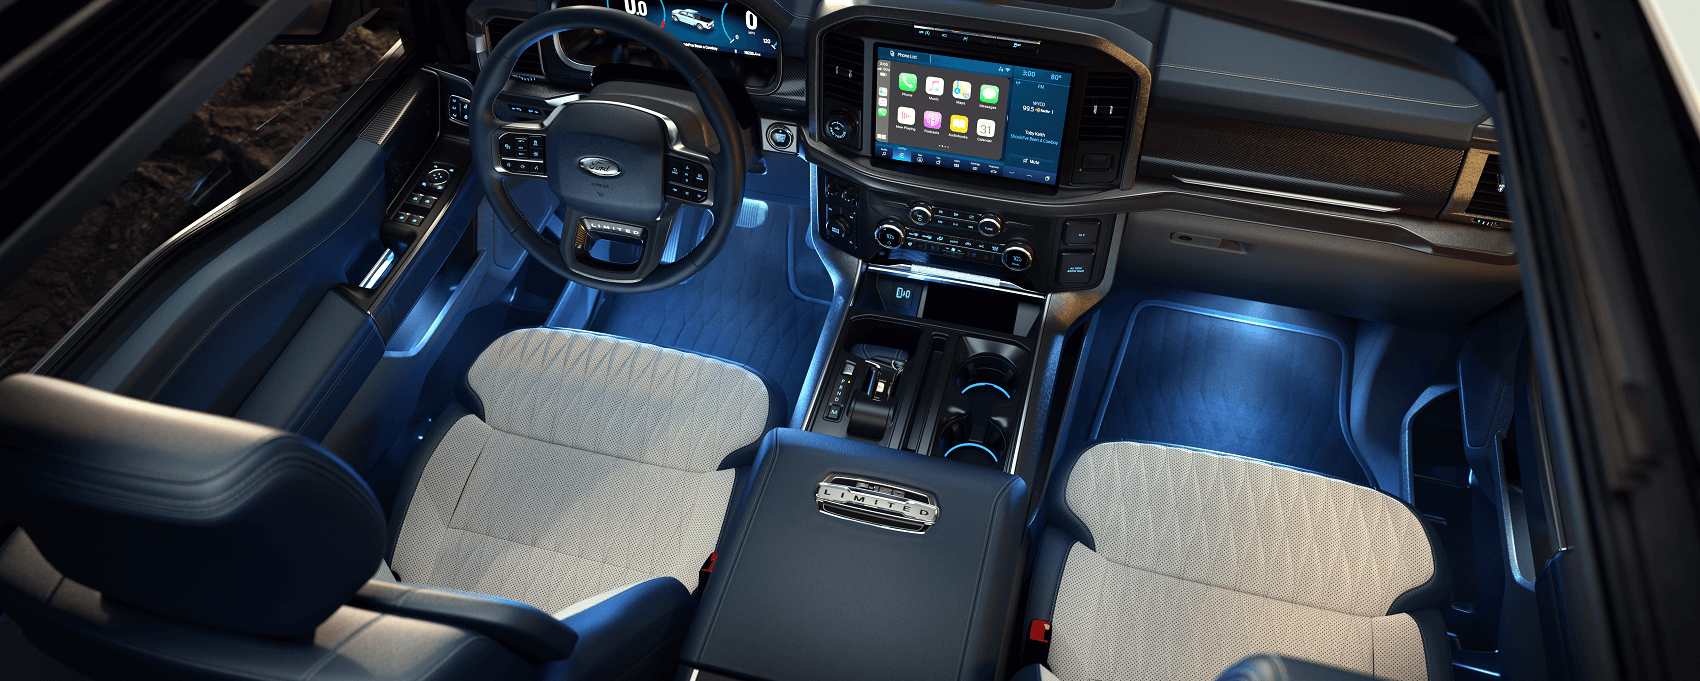 Ford F-150 Interior Dimensions